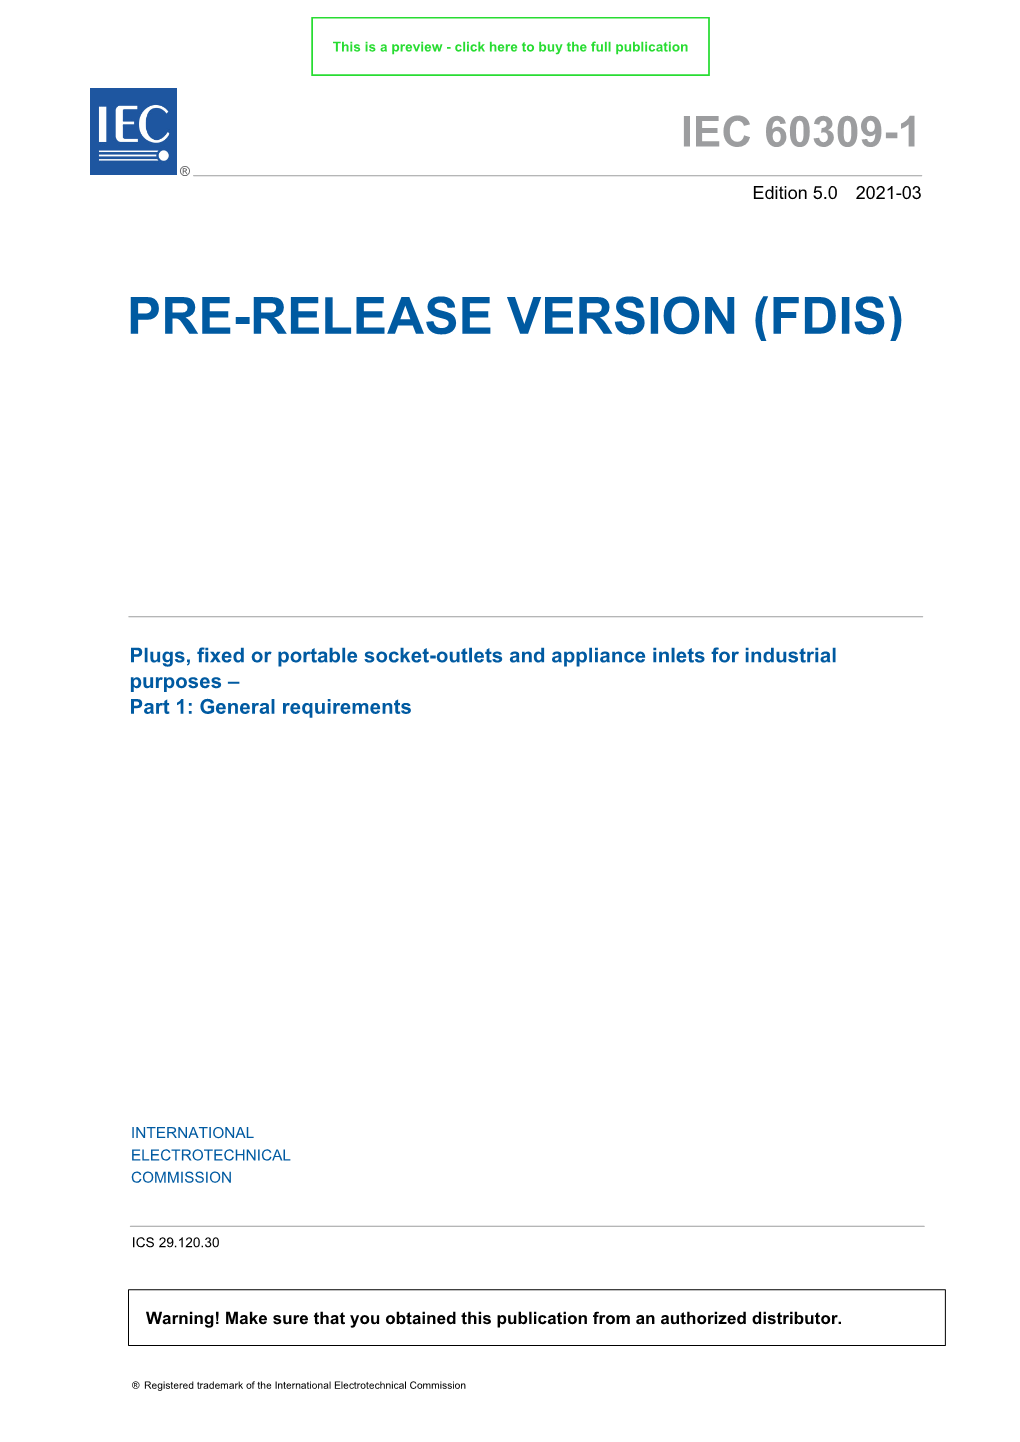 Pre-Release Version (Fdis)